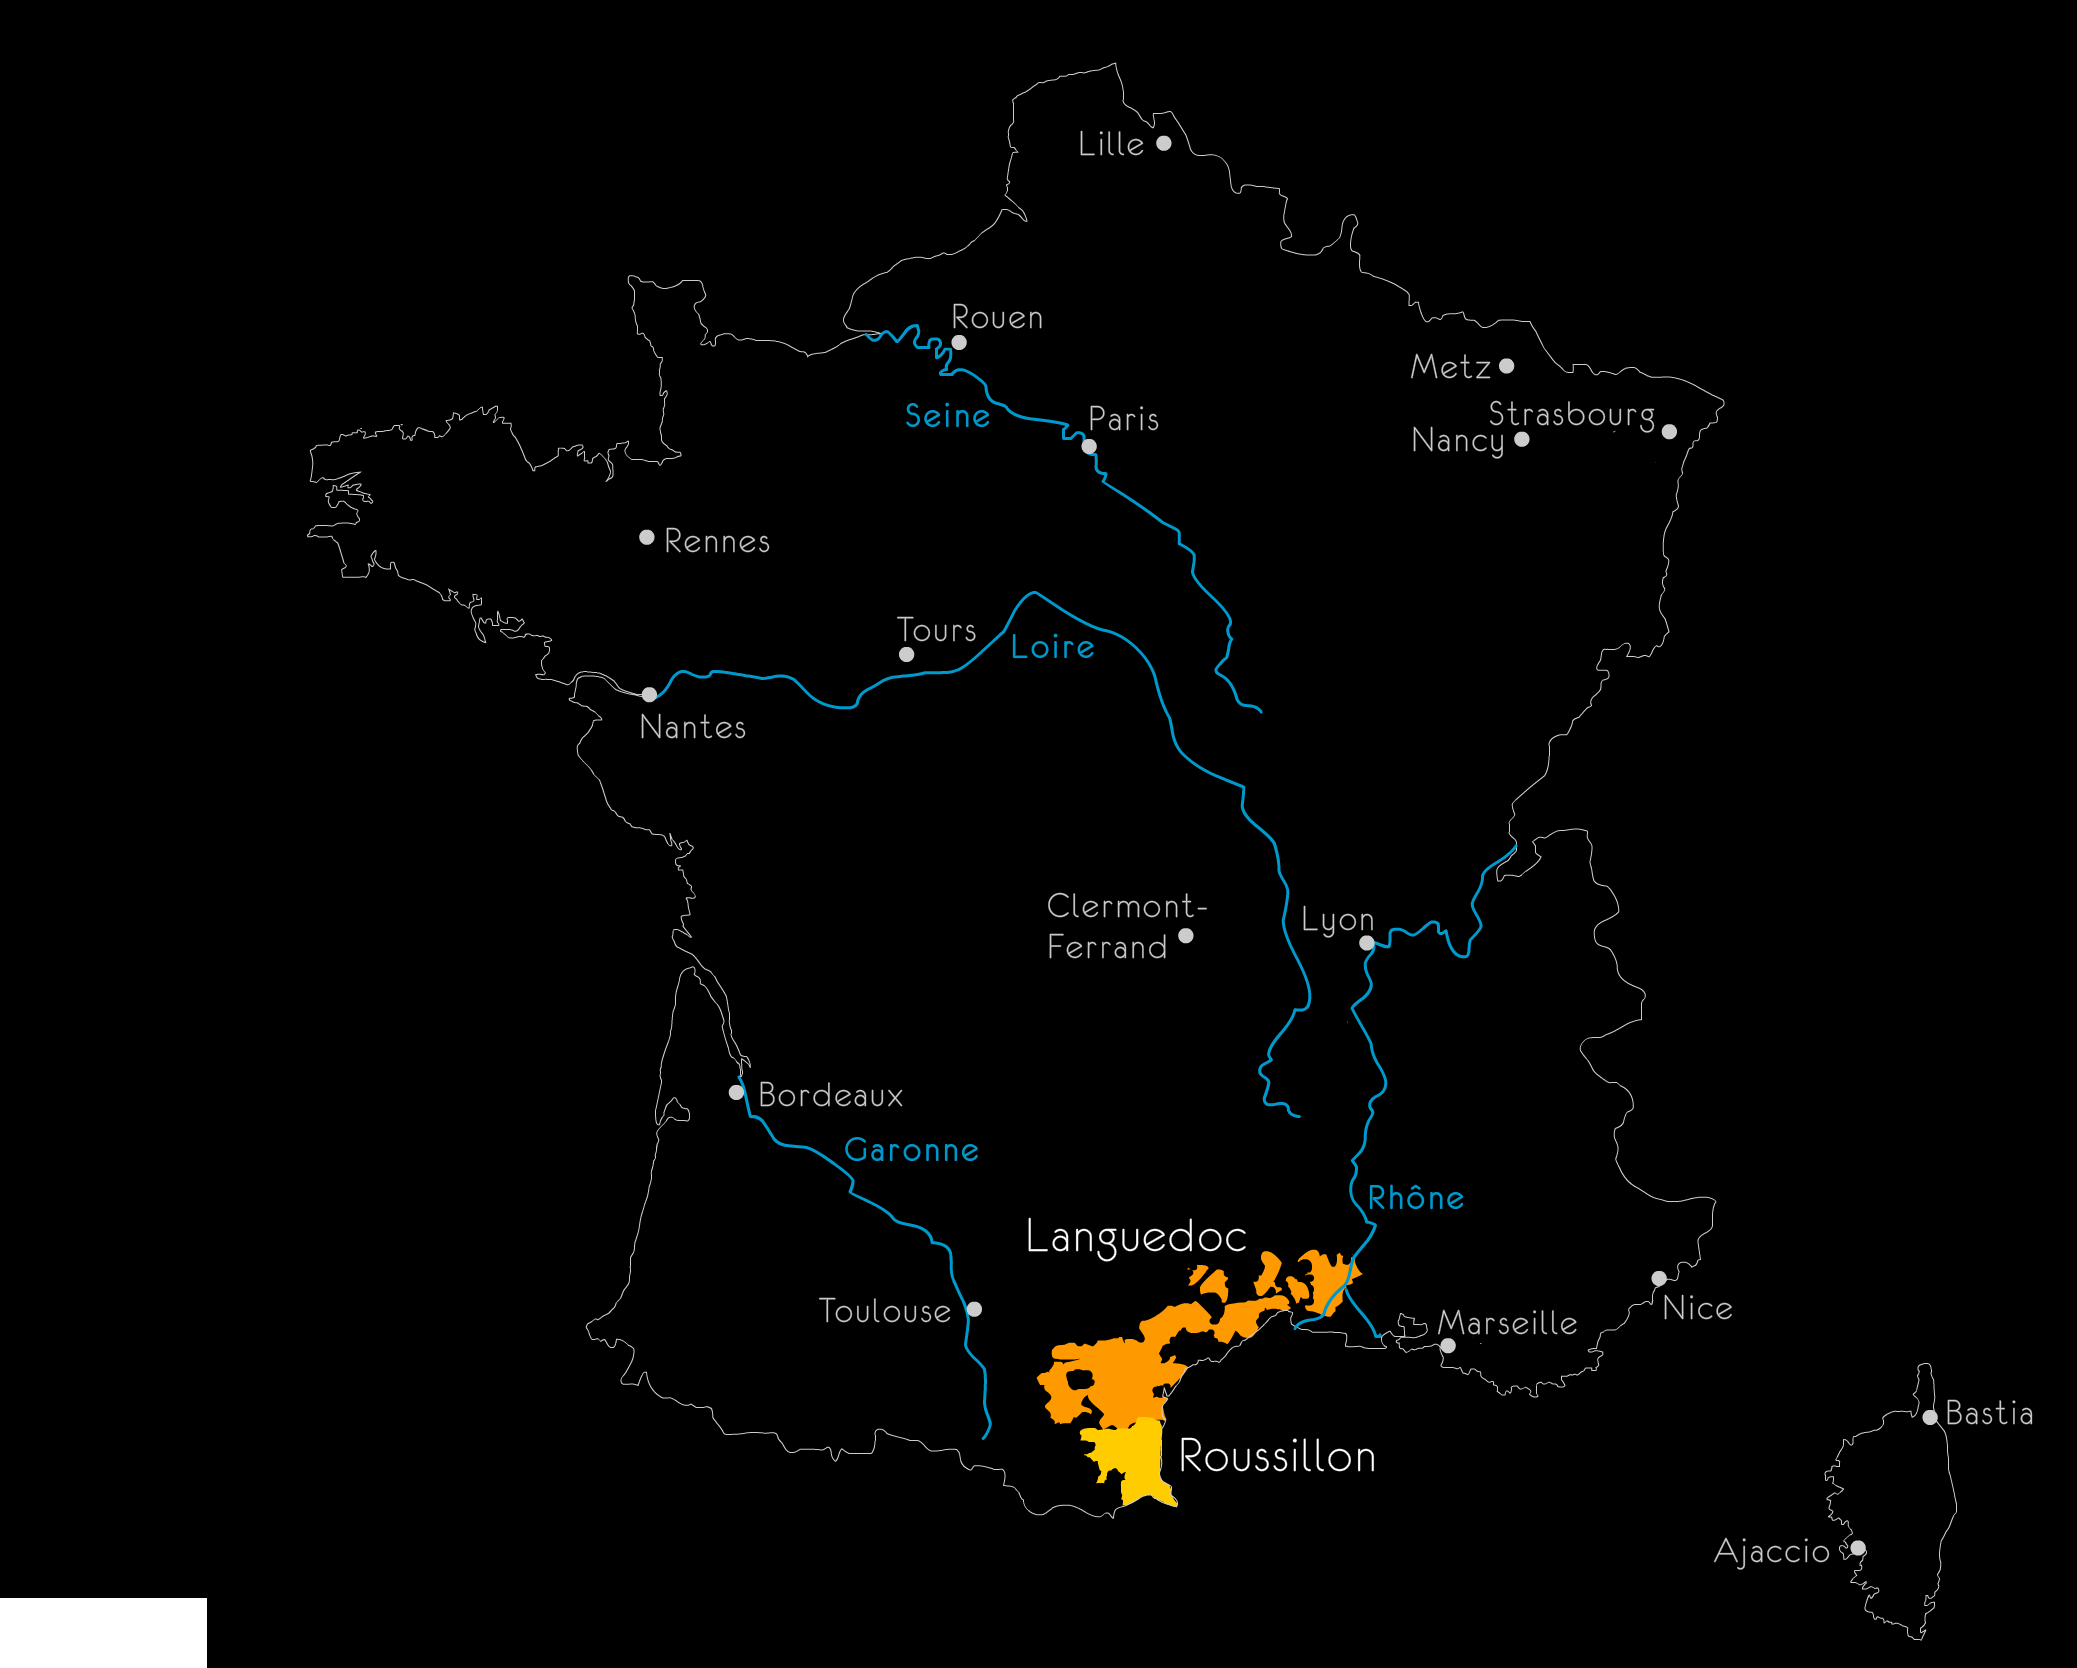 Carte Languedoc-Roussillon